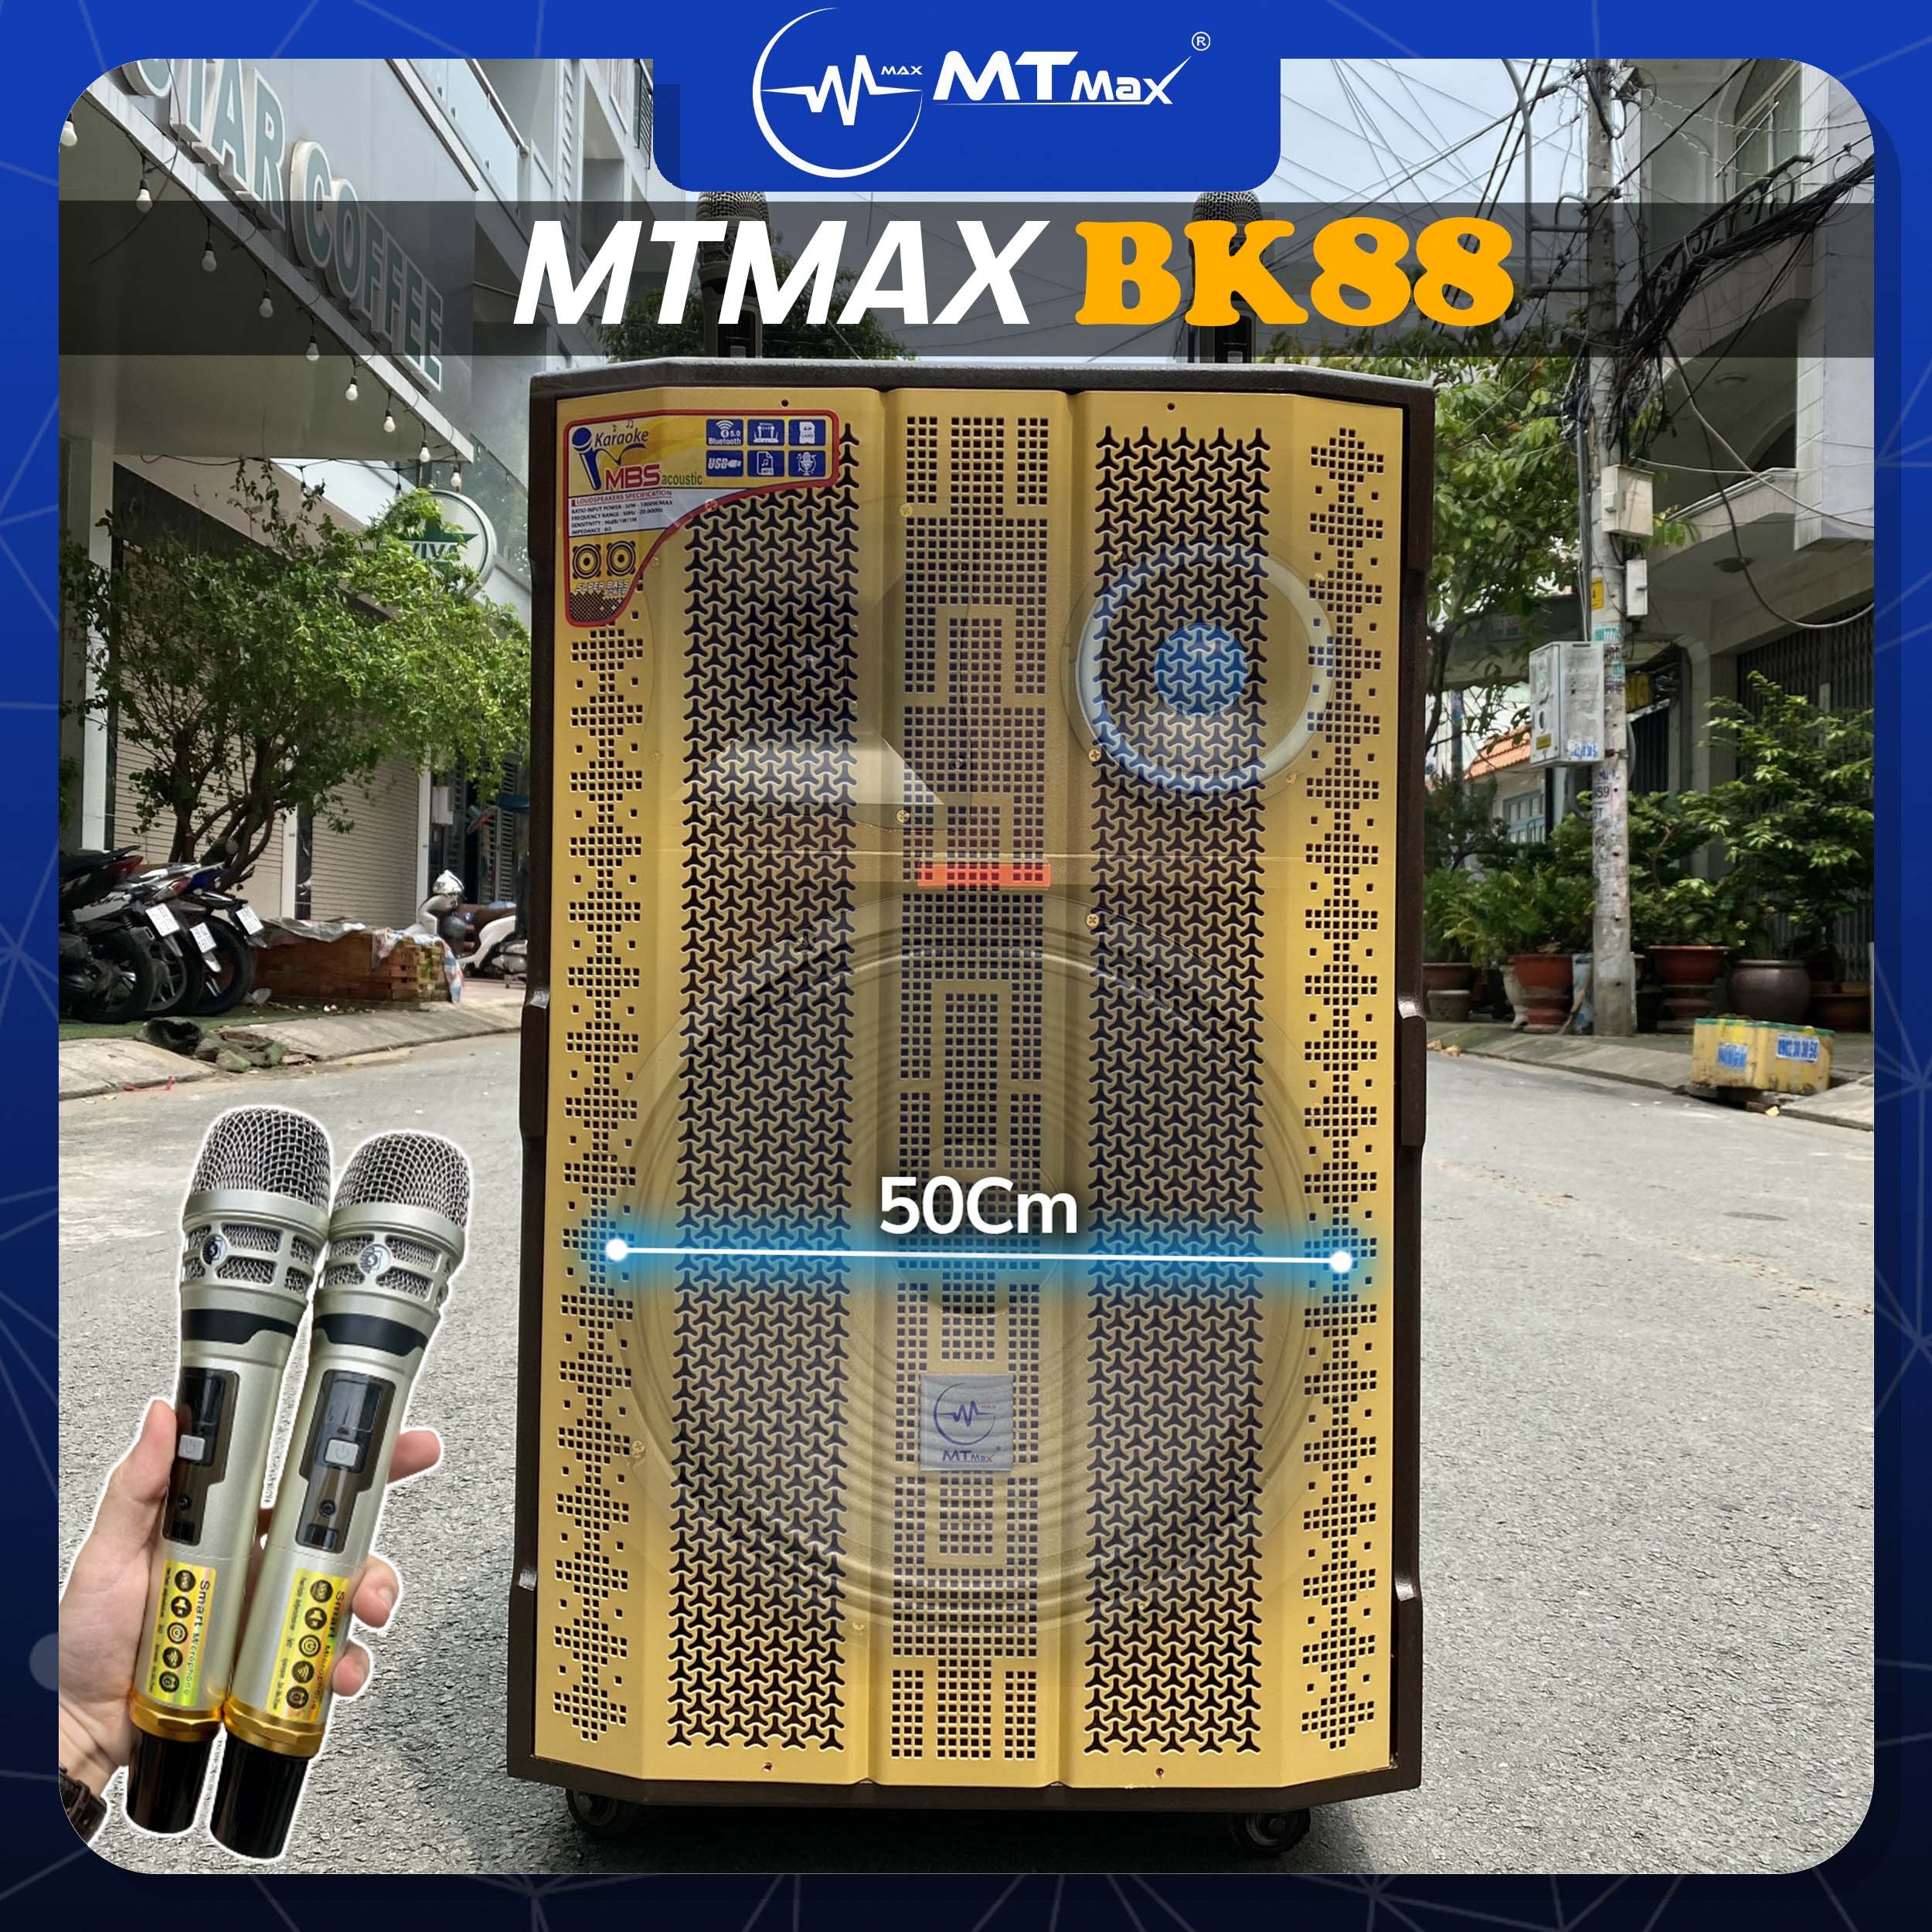 Loa kéo di động MTMax BK88 - Dàn karaoke ngoài trời bass 5 tấc 1 mid 1 treble - Loa khủng long công suất theo nhà sản xuất đến 1000W - Kèm 2 micro không dây UHF - Đầy đủ kết nối Bluetooth, AV, USB, SD card, TWS hàng chính hãng